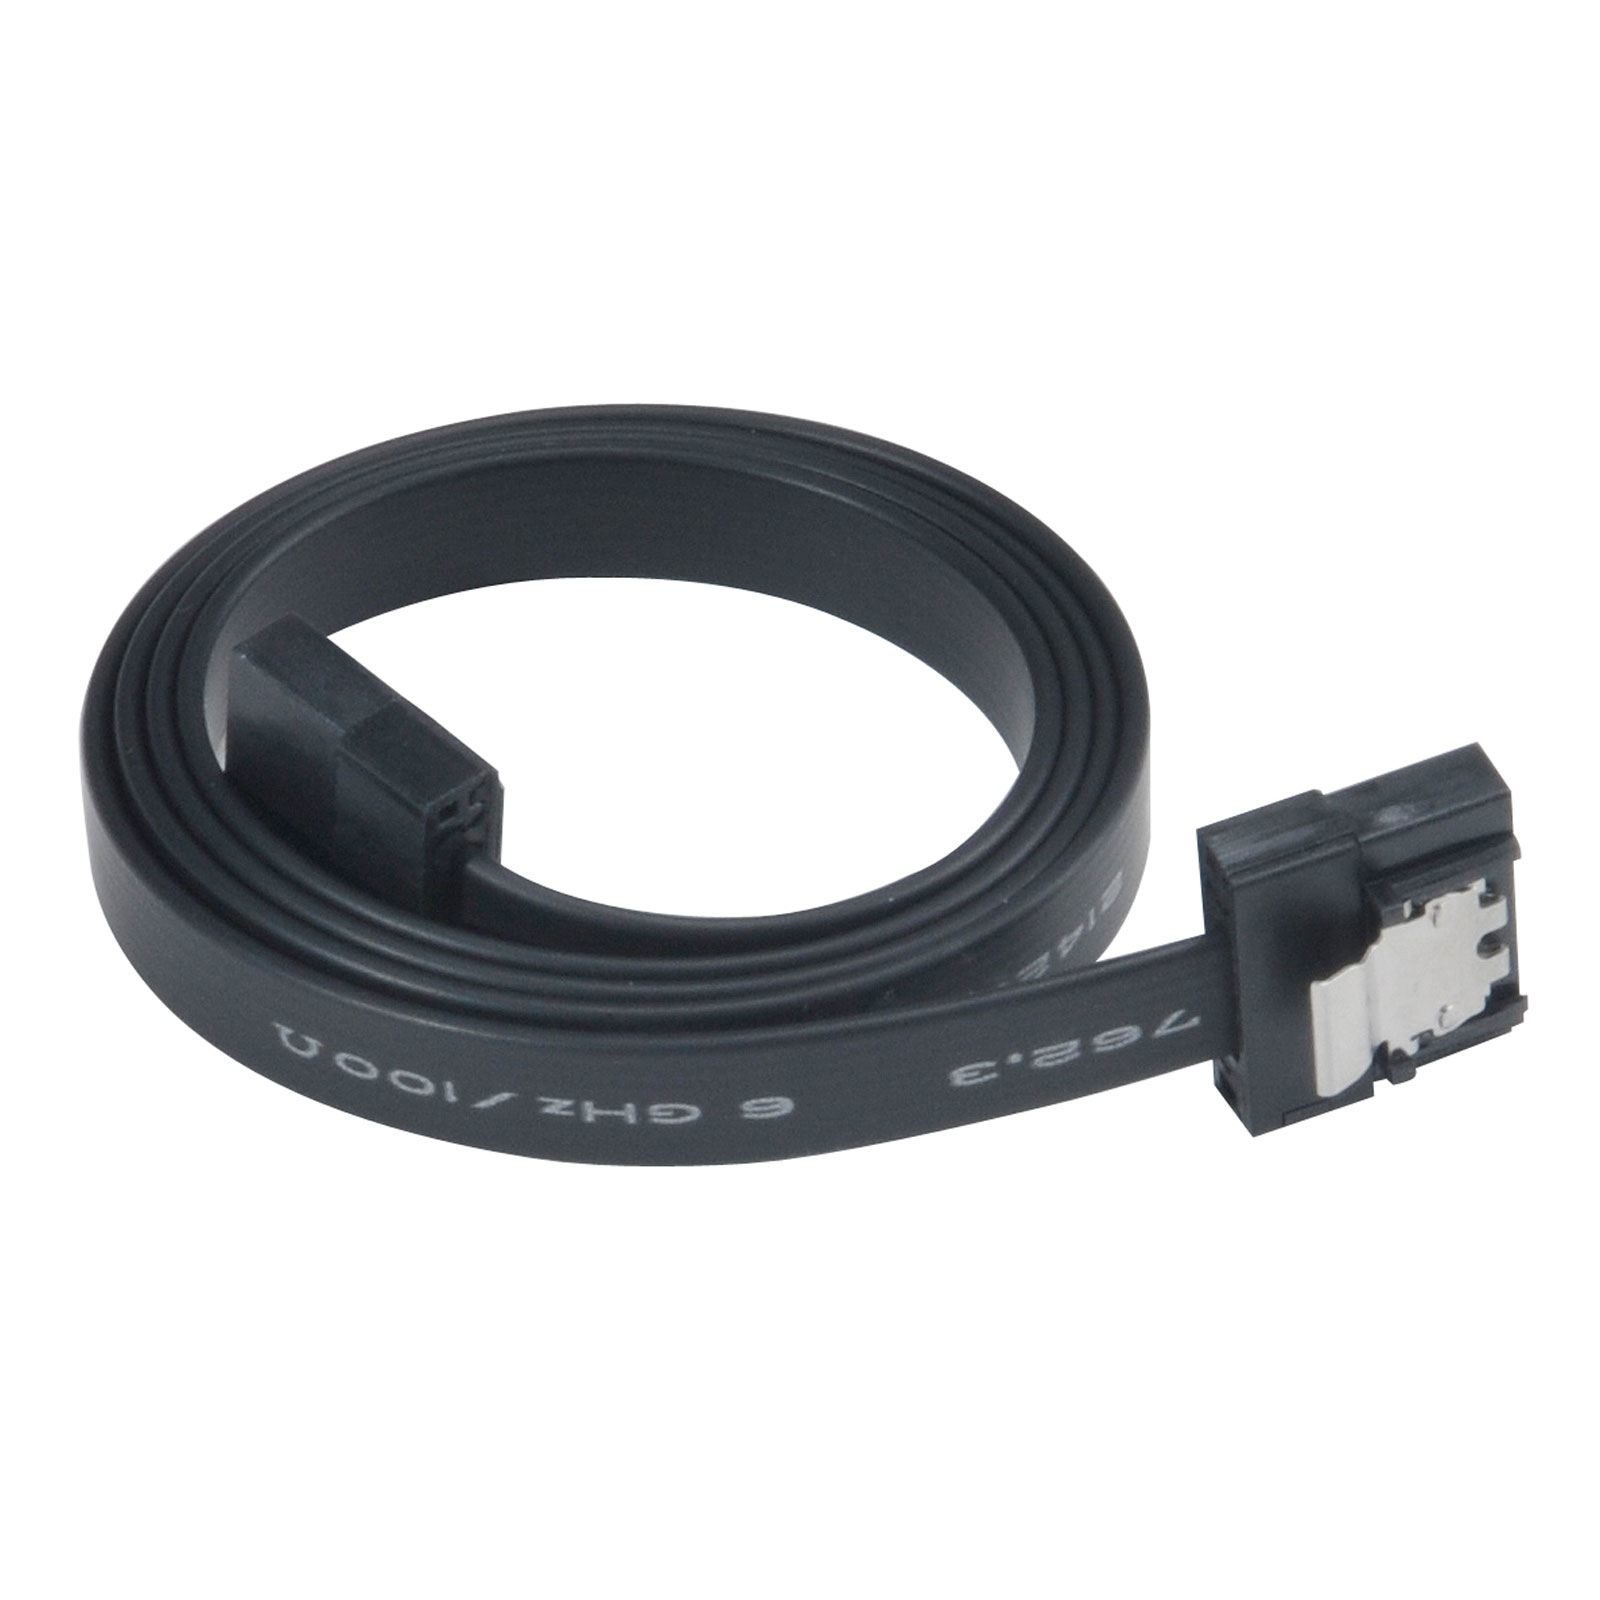 Akasa super slim sata rev 3.0 data cable with securing latches - 15cm, black, *SATAM